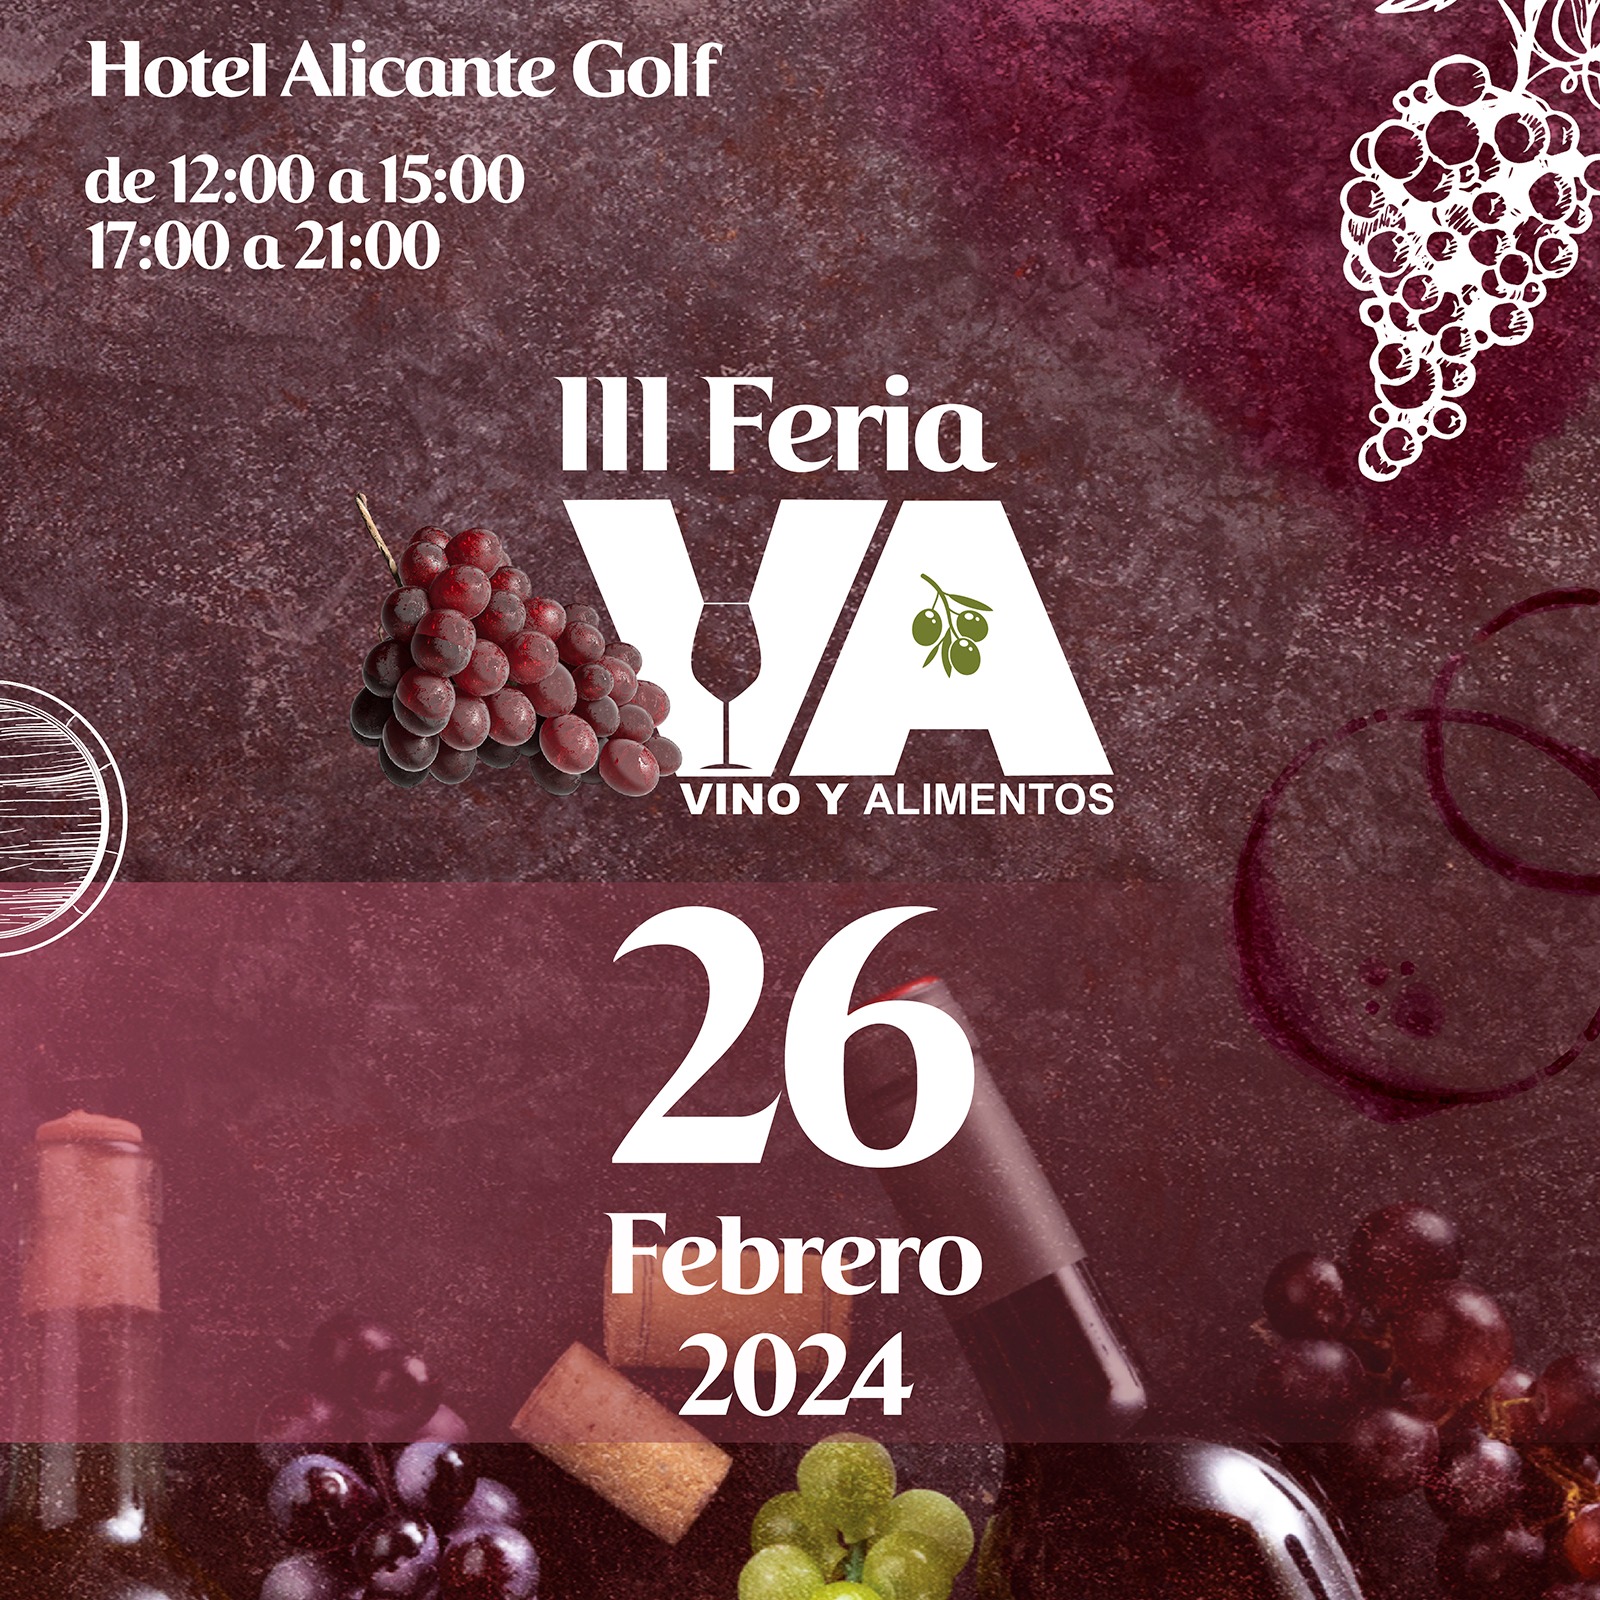 Feria Vinos y Alimentos Alicante 2024